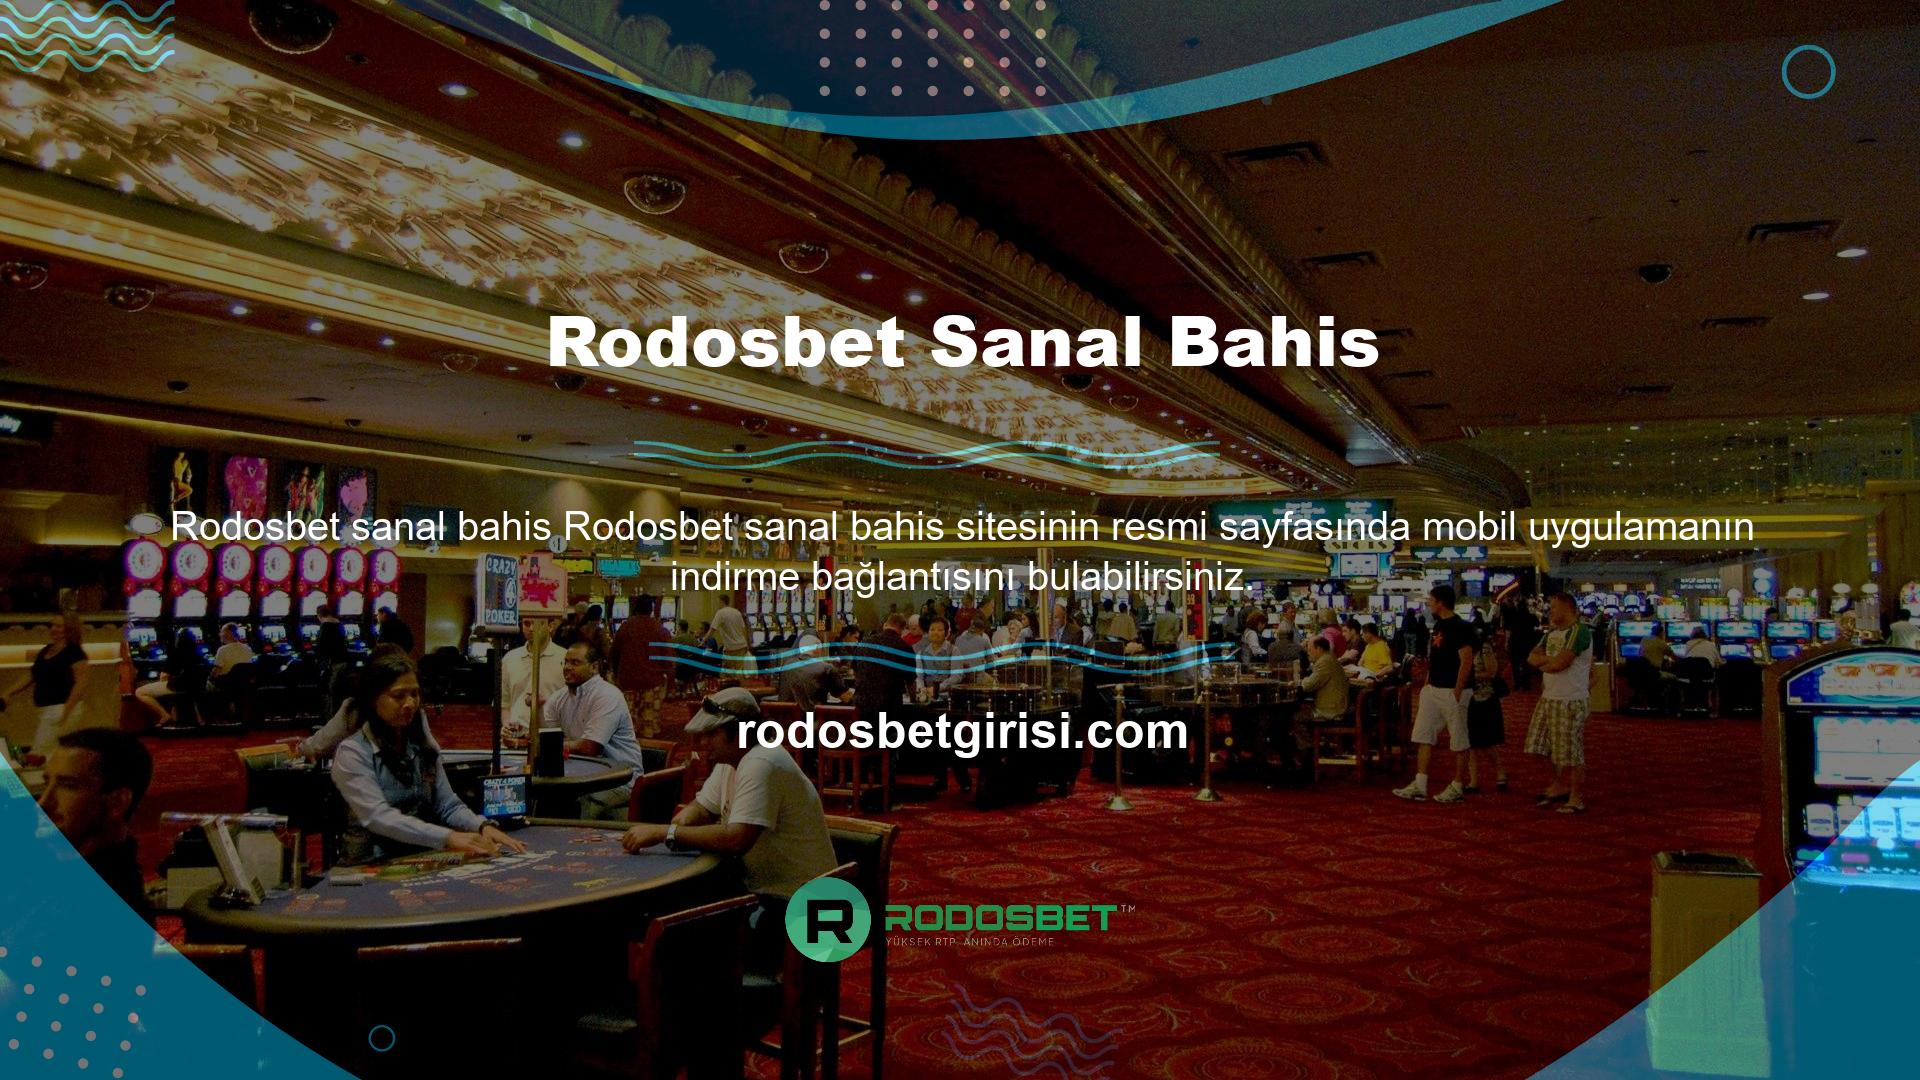 Rodosbet web sitesi, Android ve iOS cihazlar için mobil uygulamalar sunmak üzere sürekli olarak gelişiyor ve bu siteyi tüm gençlik ortamlarının erişimine uygun hale getiriyor